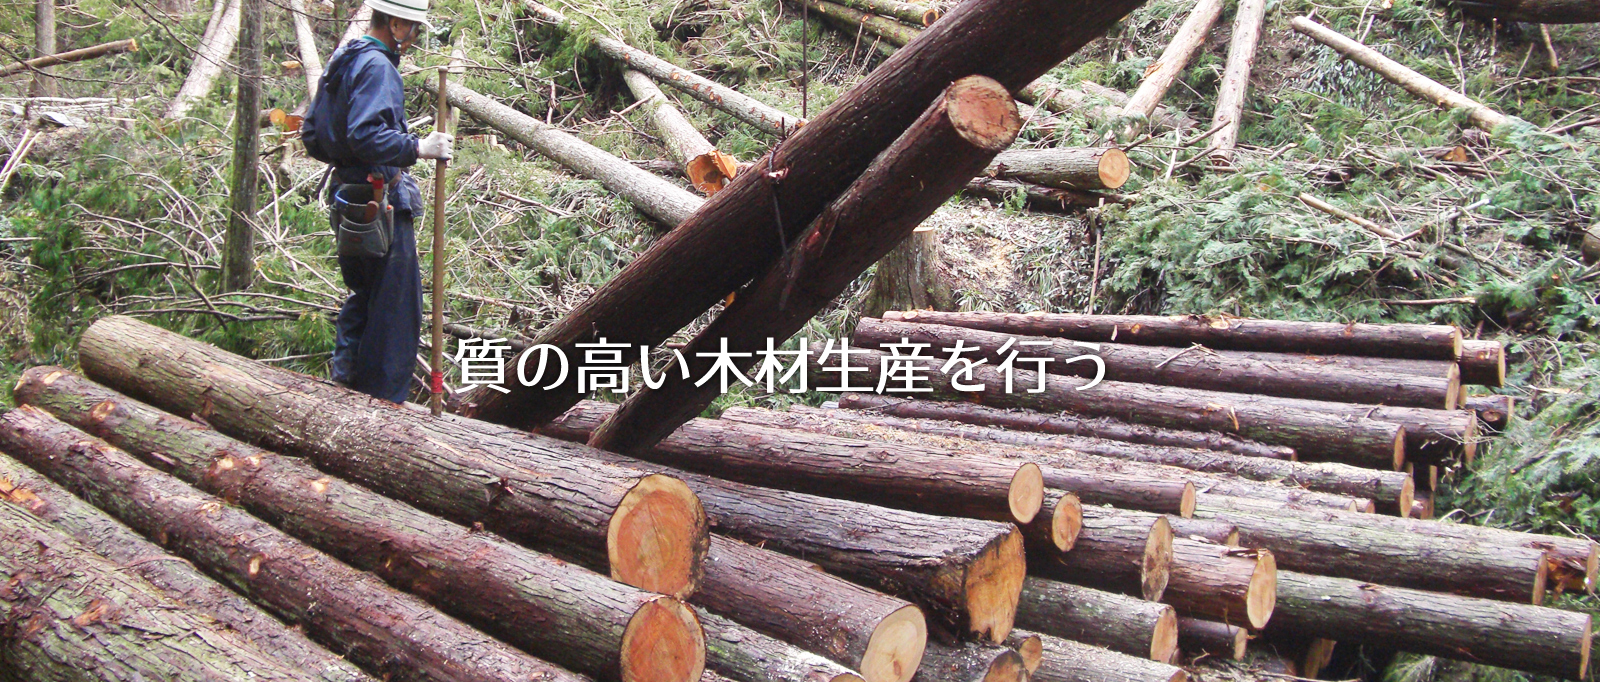 質の高い木材生産を行う